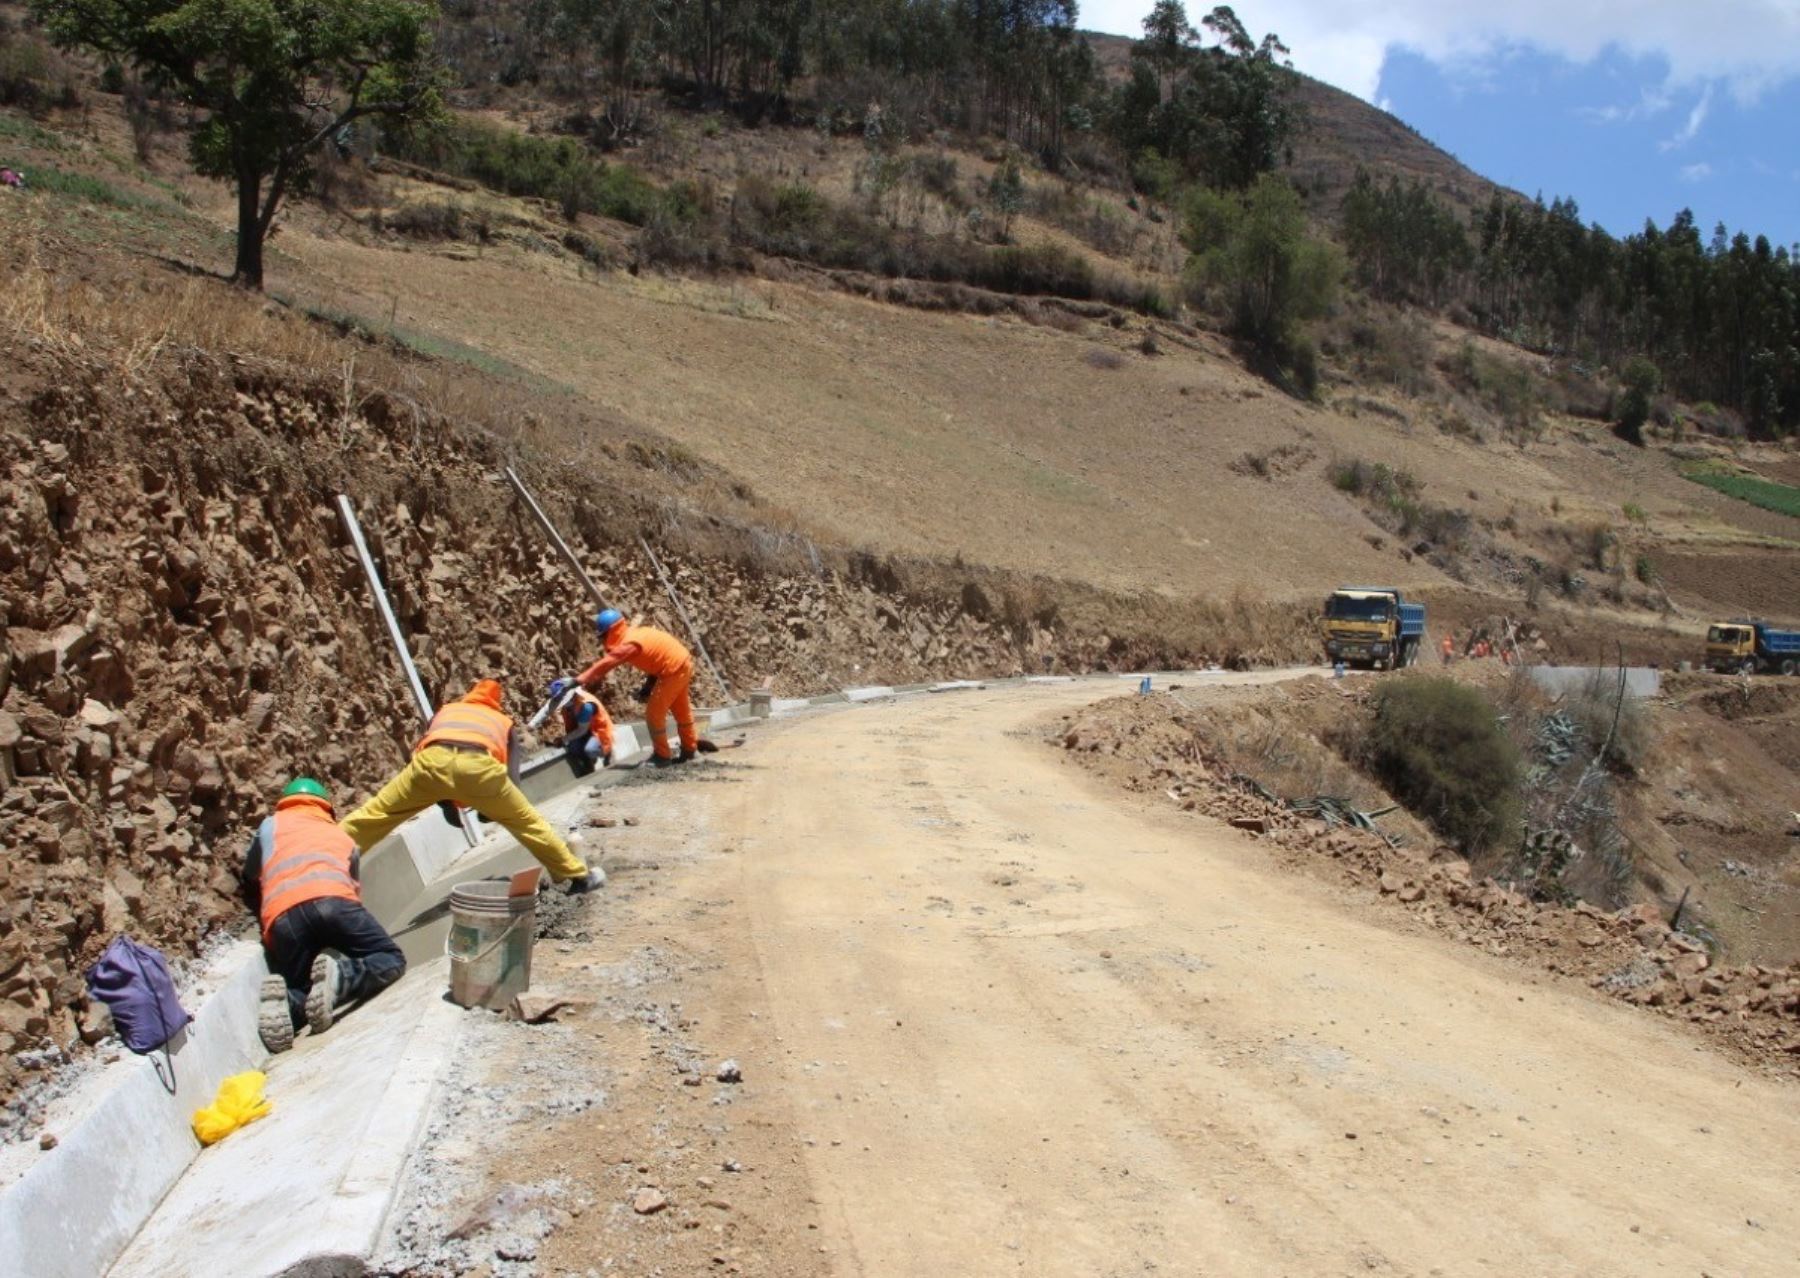 MTC destina S/ 242 millones a La Libertad para ejecutar trabajos de mantenimiento en 2,500 km de caminos vecinales en esa región. Foto: ANDINA/difusión.